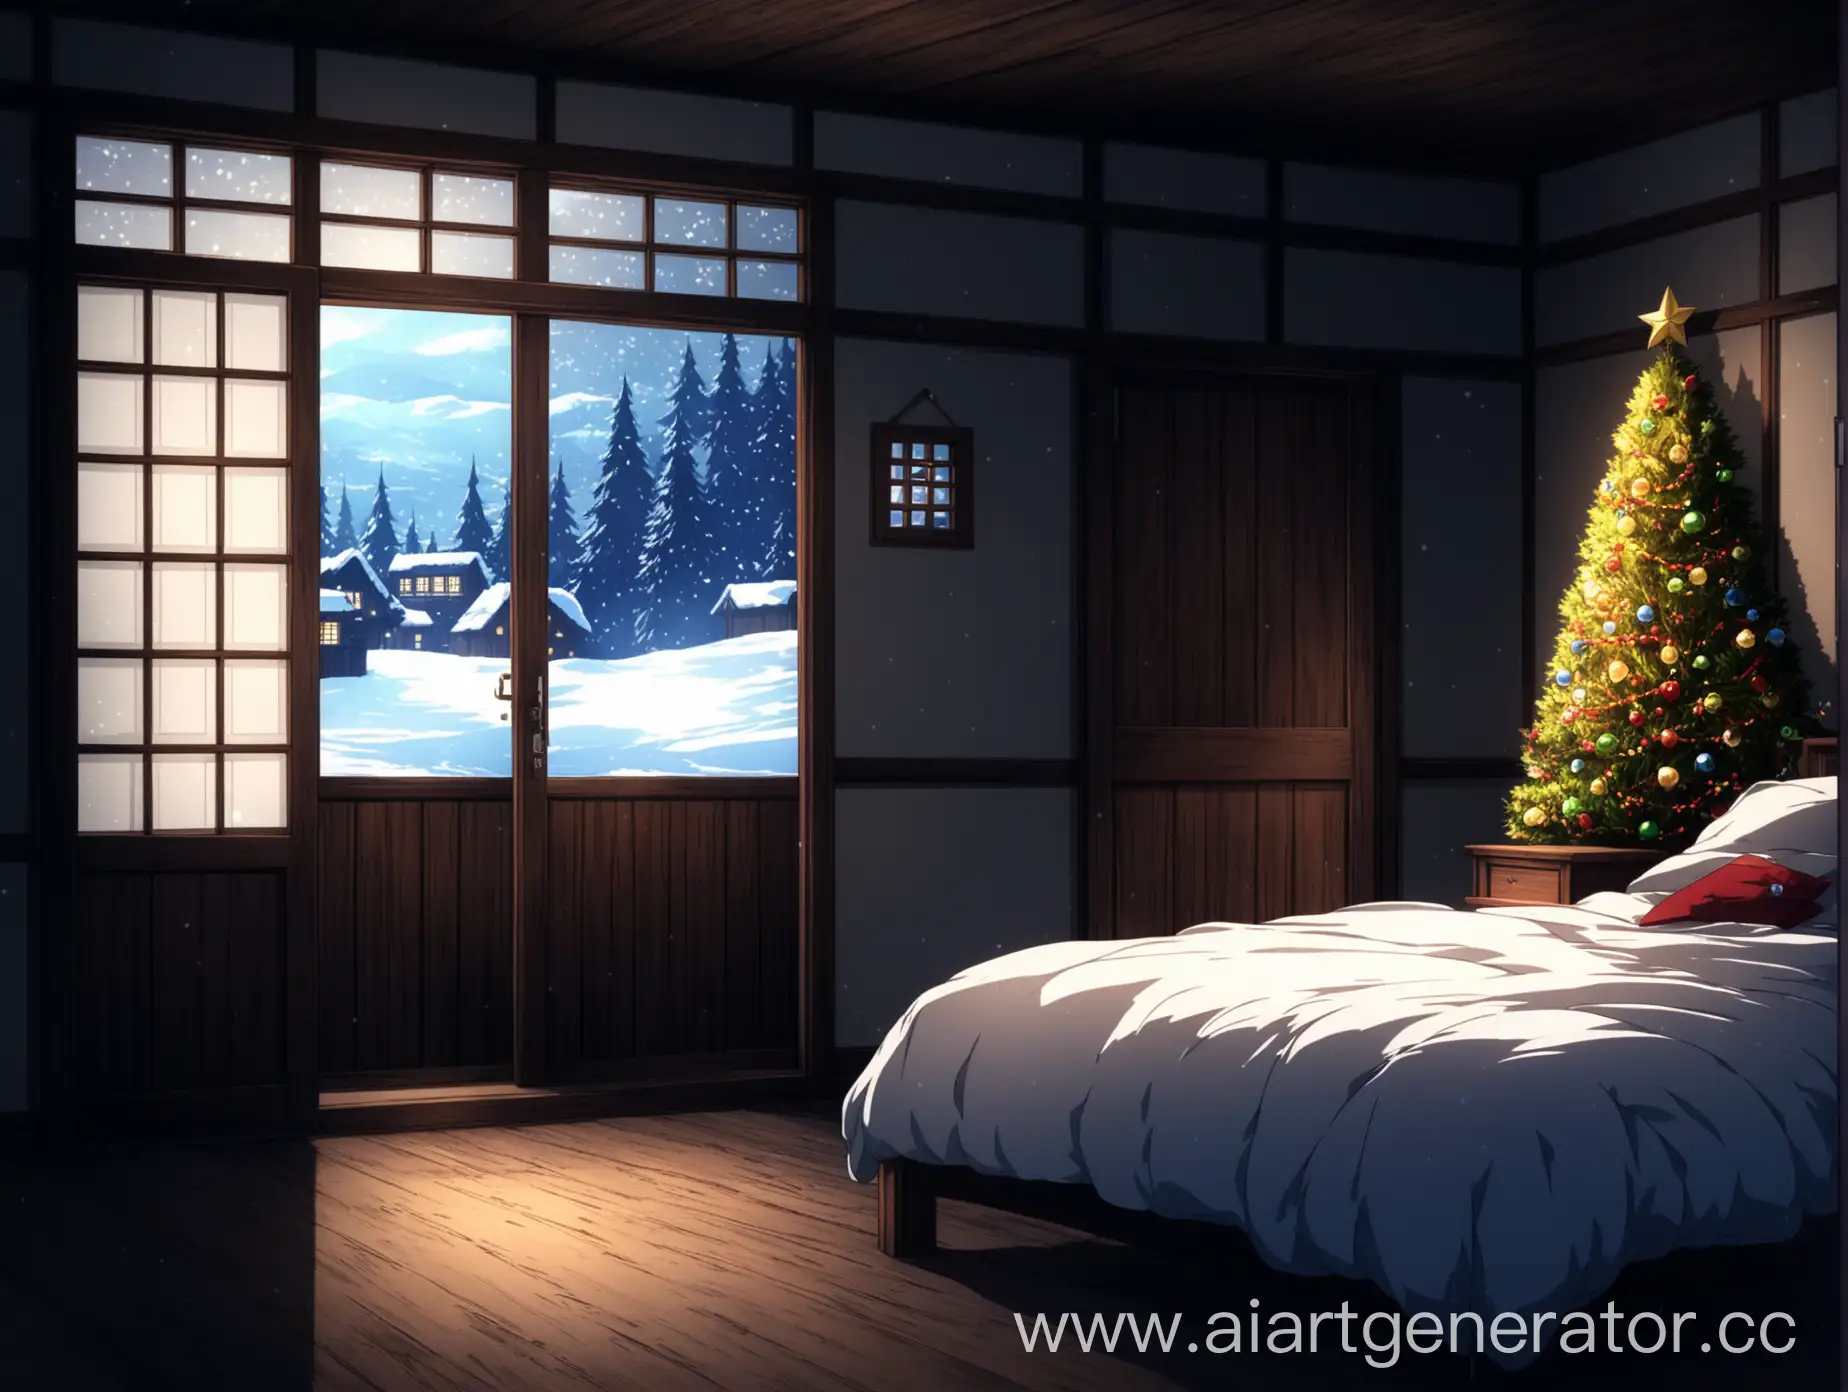 Тёмная деревянная комната с большой кроватью у стены праздничной обстановкой за окном зима в супер аниме стиле осмотр из-за двери вид за дверью